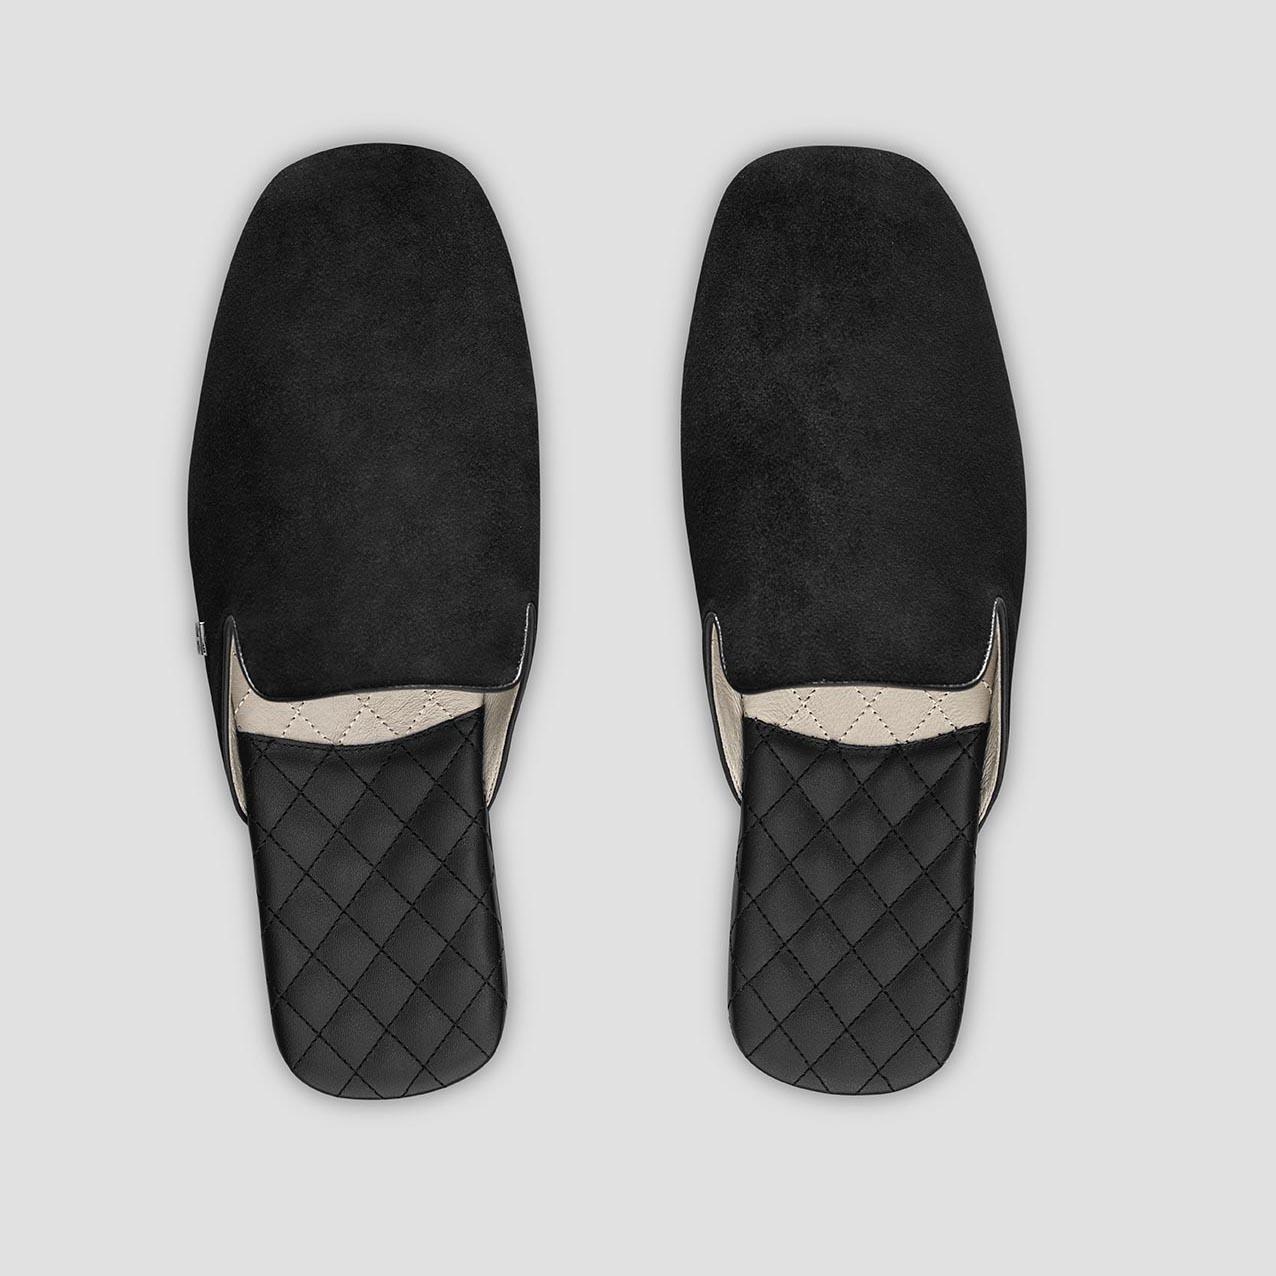 Тапочки Togas Реон черные мужские кожаные, размер 42-43